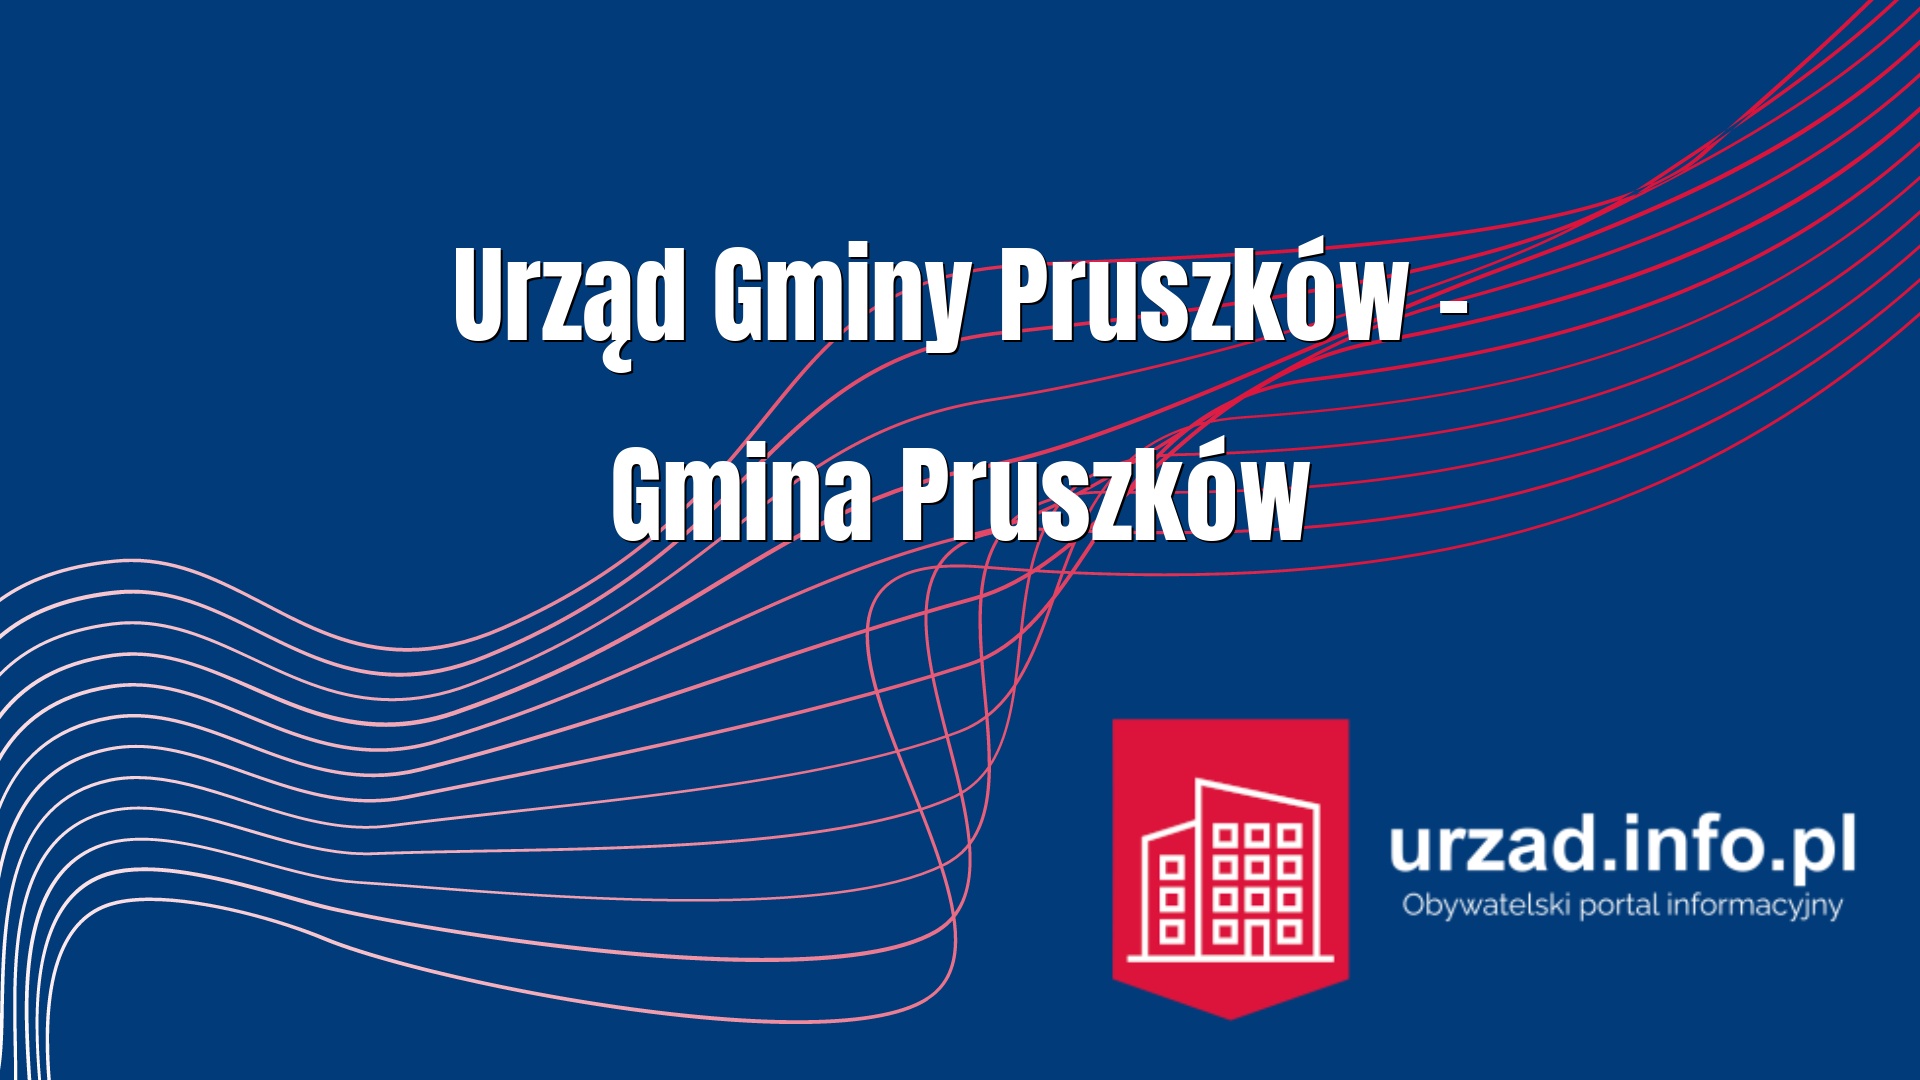 Urząd Gminy Pruszków – Gmina Pruszków